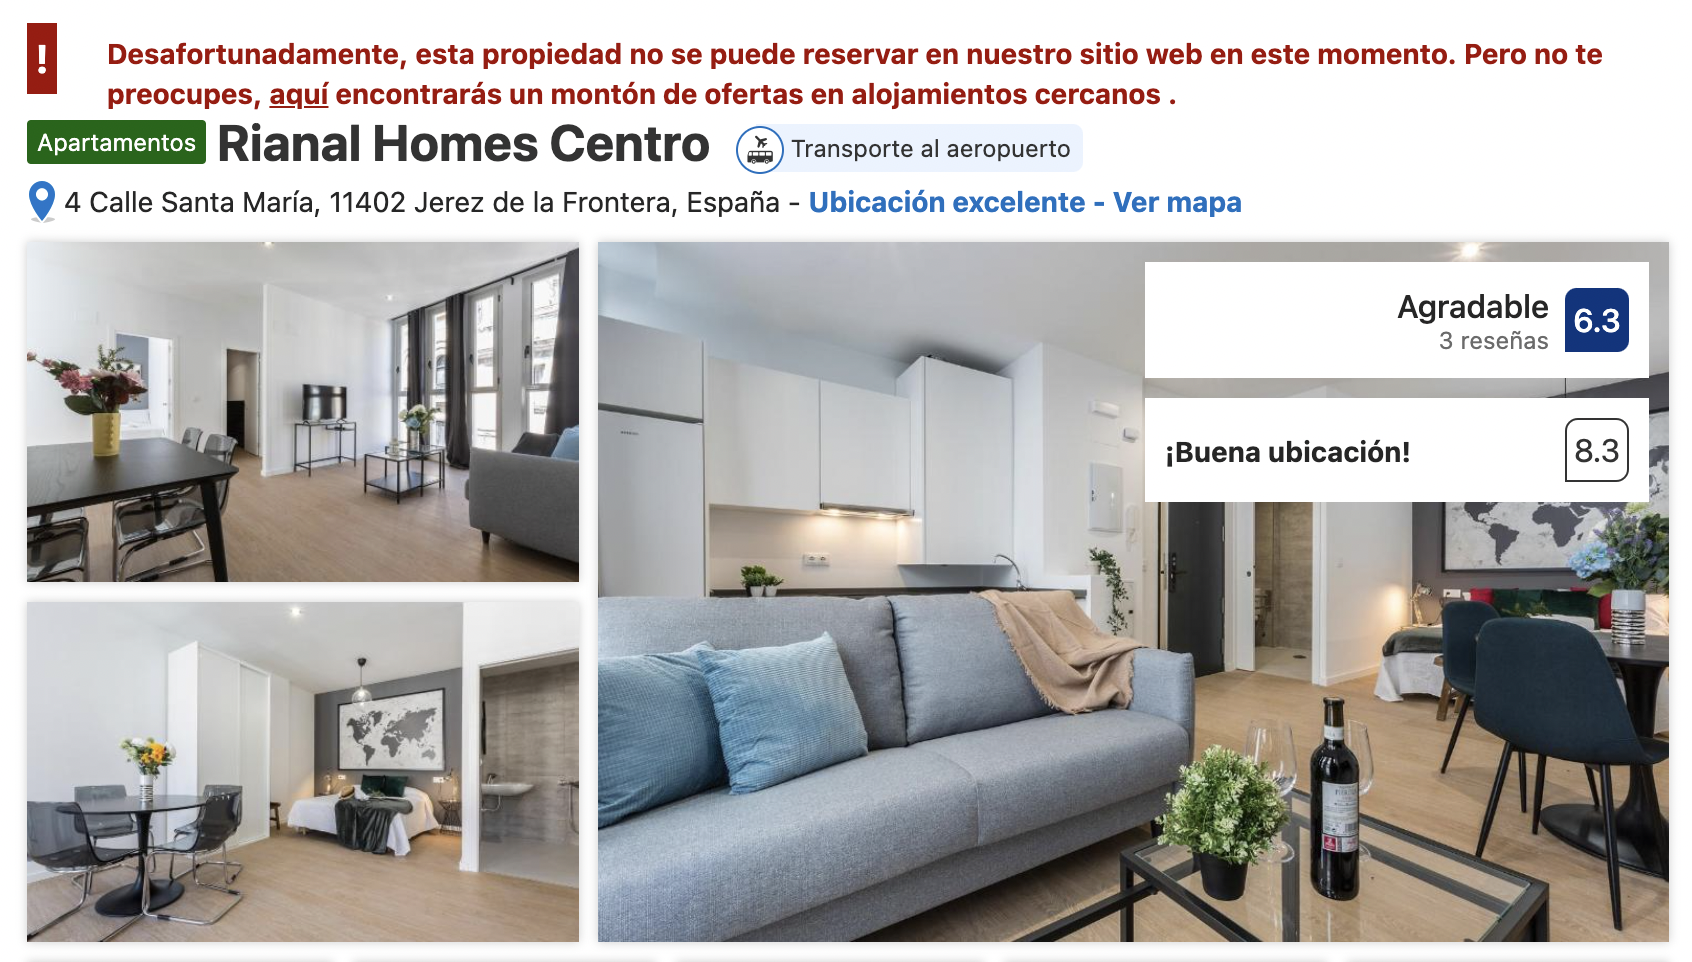 Anuncio en Booking, portal turístico, de Rianal Homes Centro, en Jerez, actualmente con las reservas desactivadas.